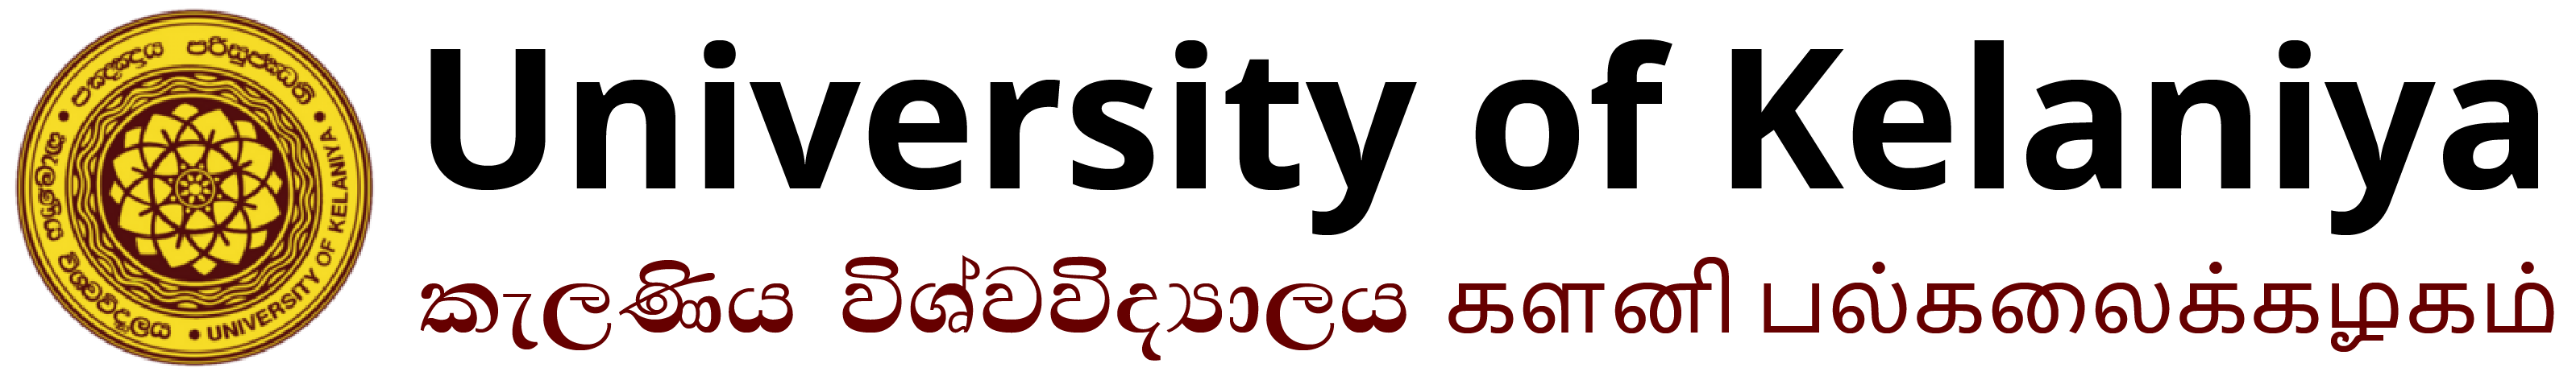 university of kelaniya logo